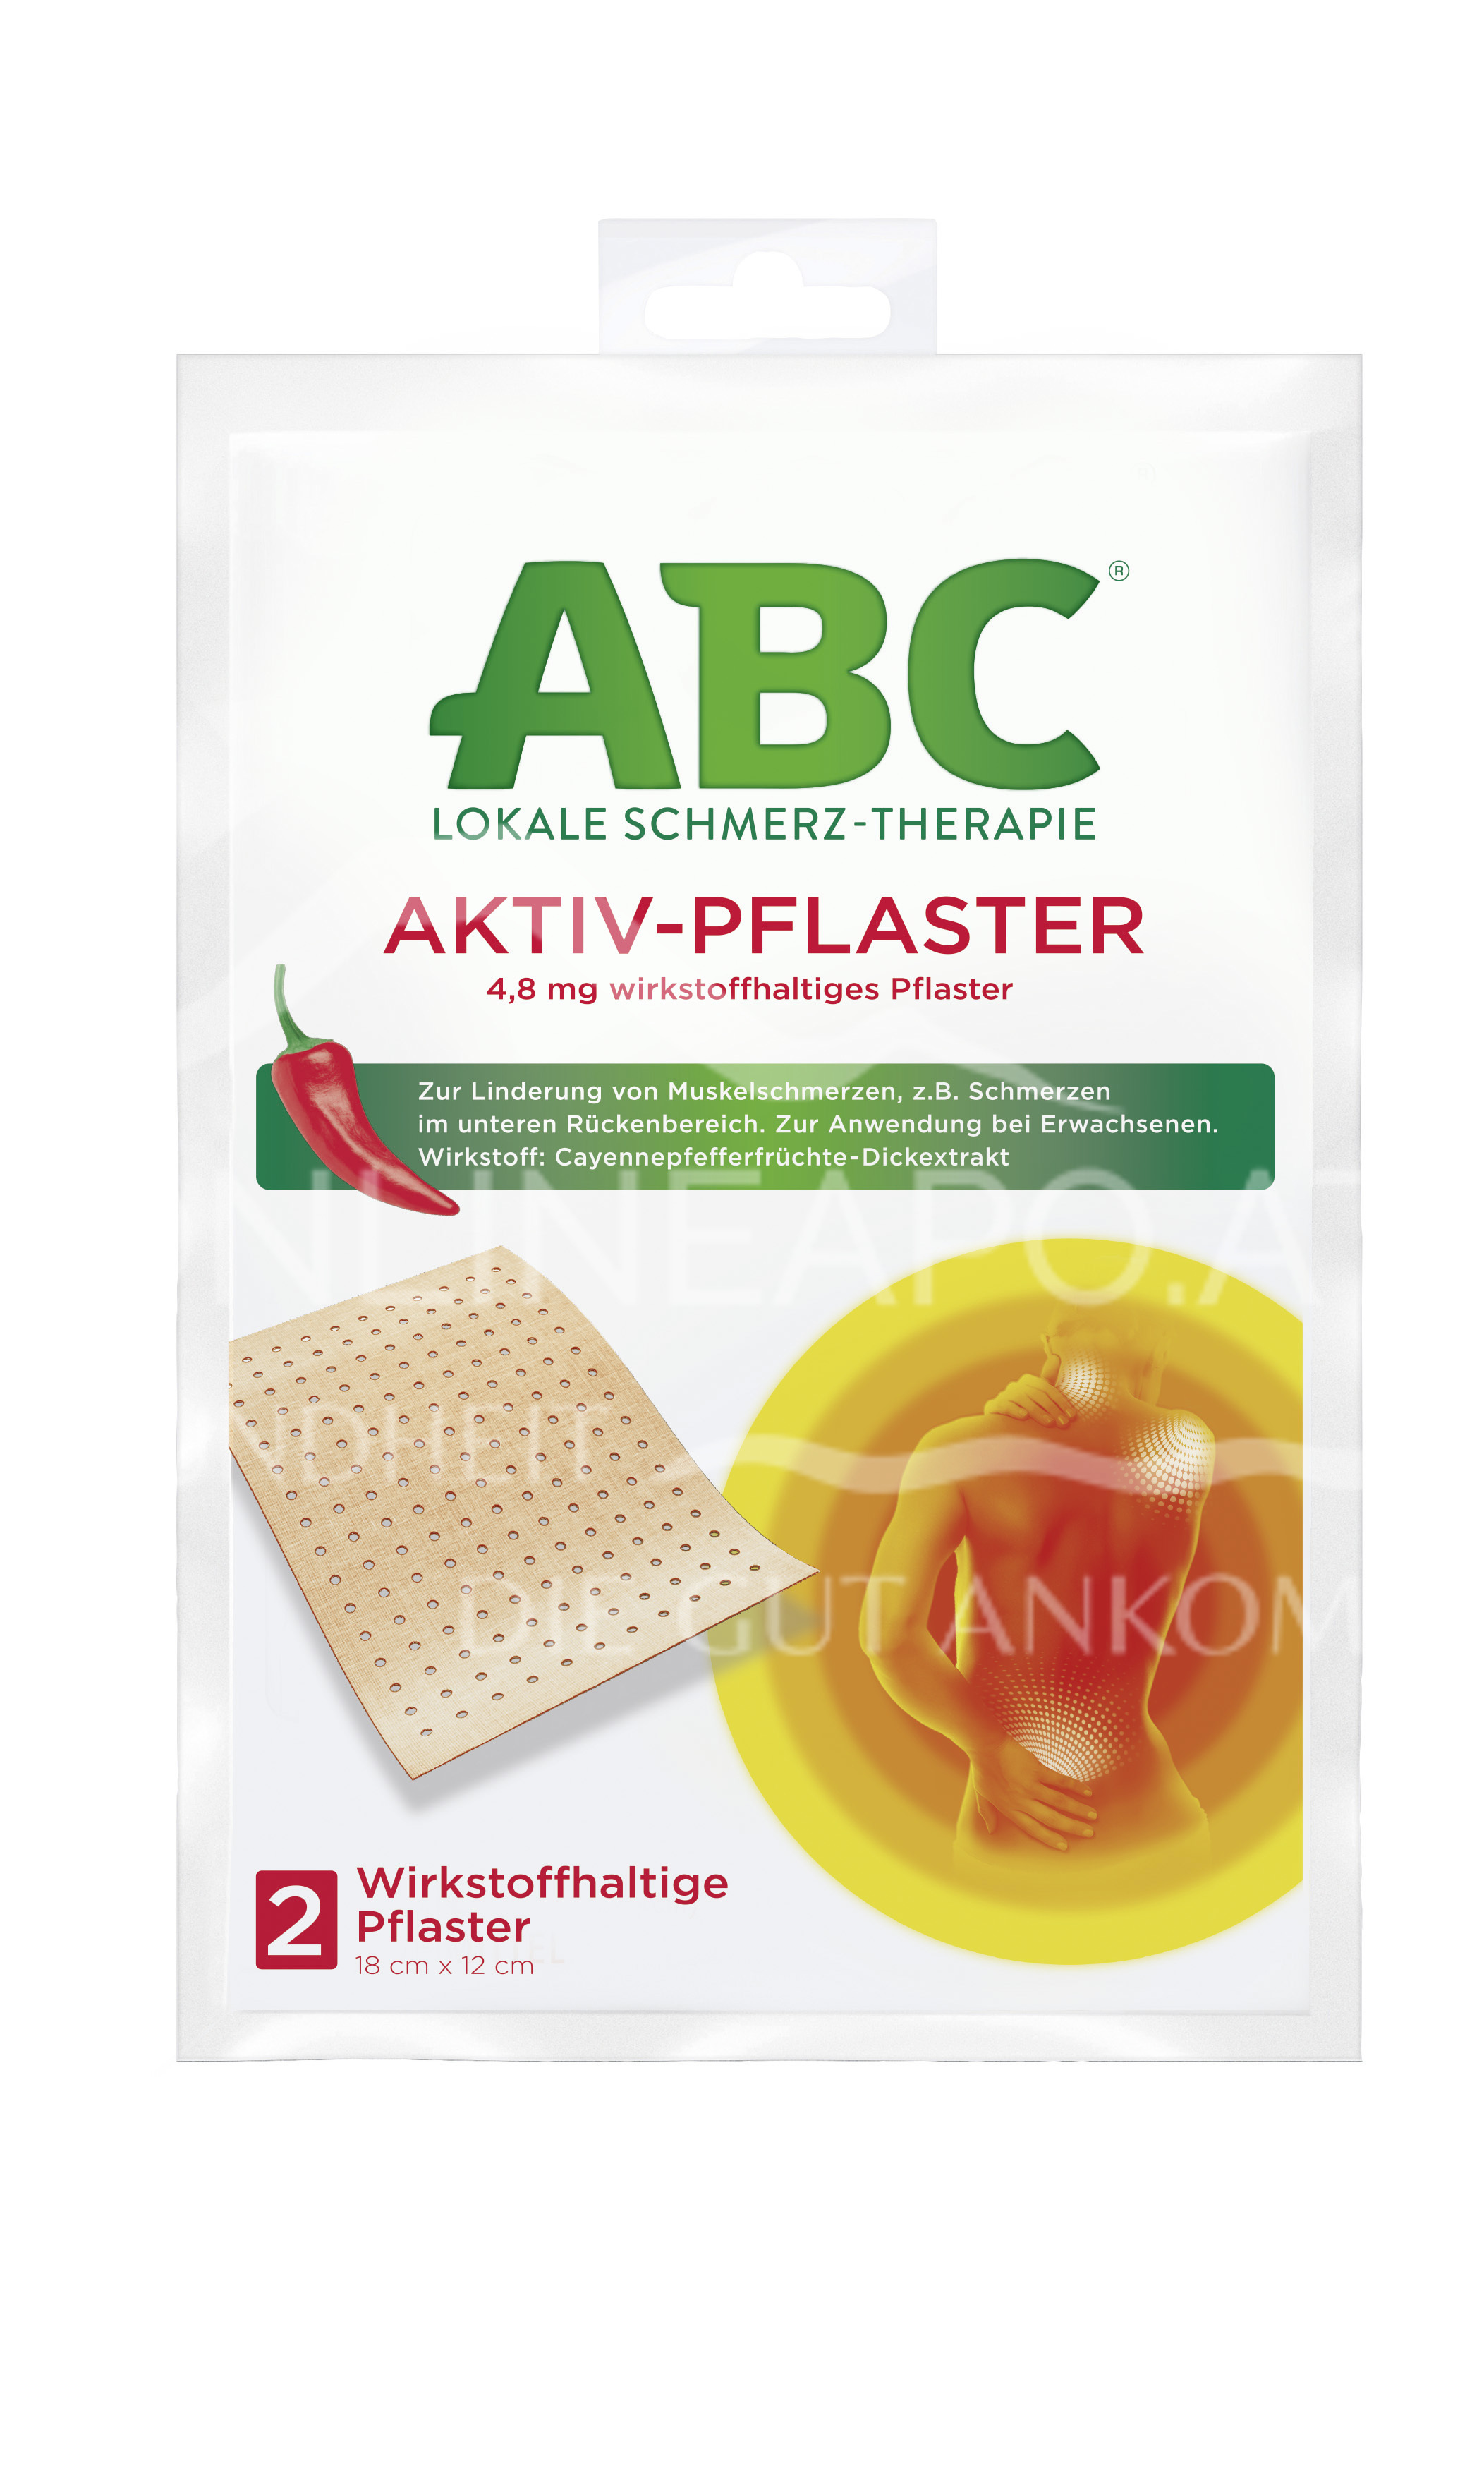 ABC® Lokale Schmerz-Therapie Aktiv-Pflaster 4,8 mg